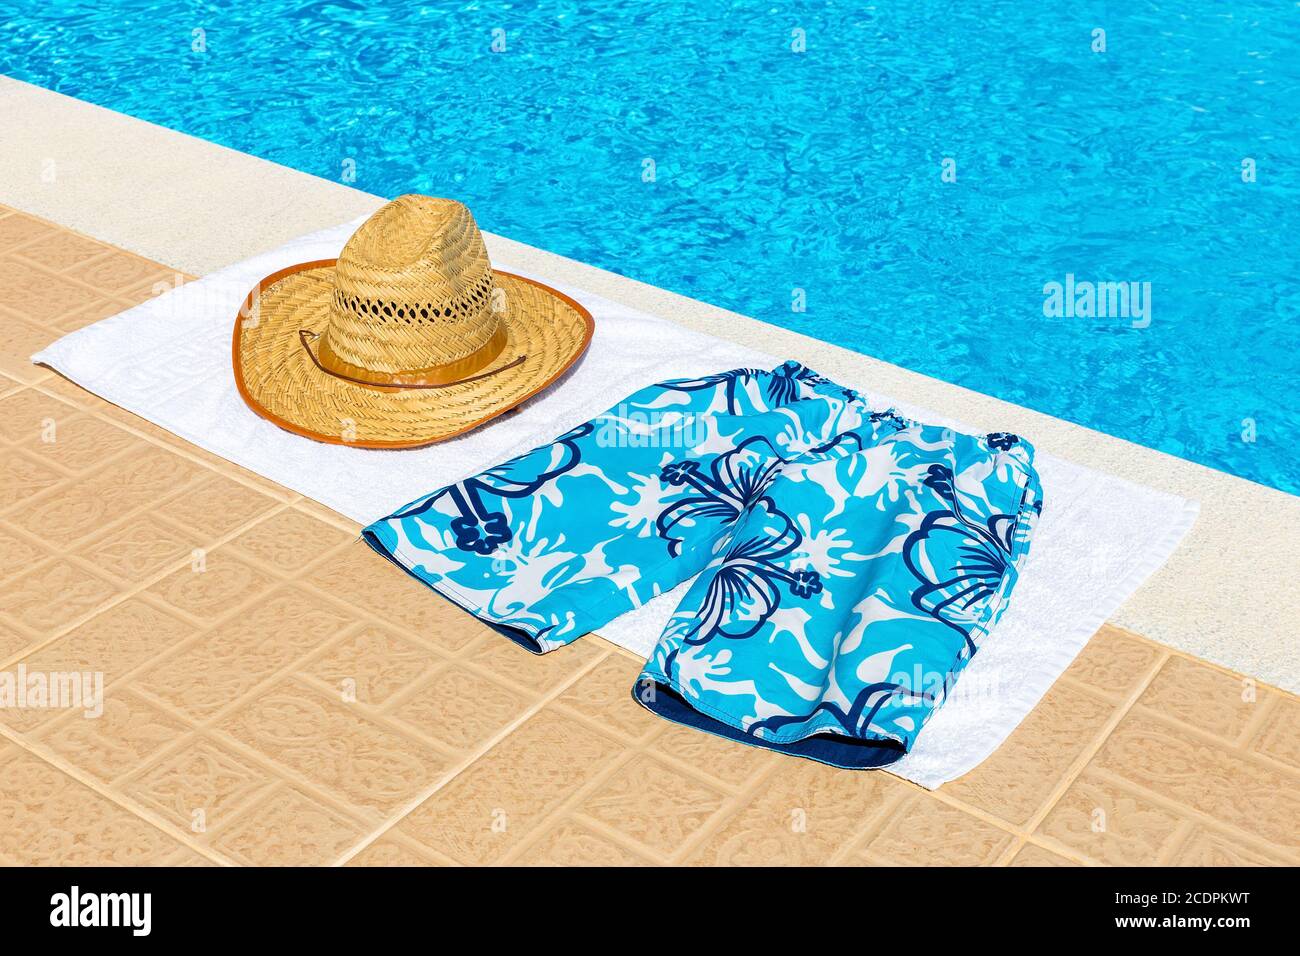 Chapeau et caleçons de natation sur une serviette près de la piscine Banque D'Images